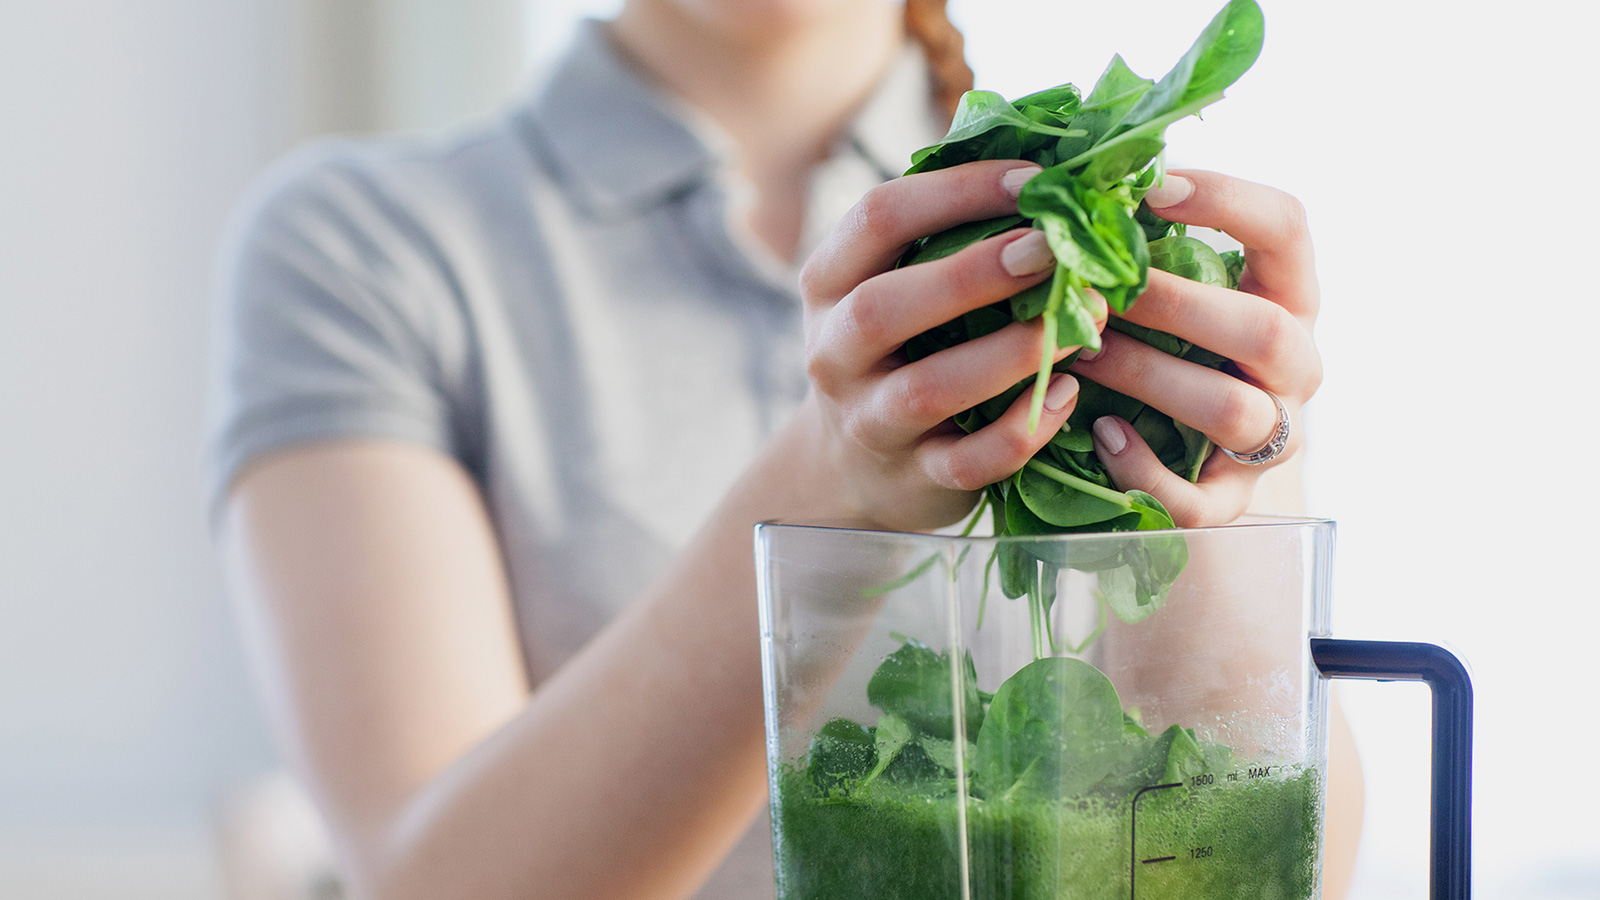 الخضروات الورقية الخضراء تمد الجسم بالعناصر المغذية وتعمل على تقوية المناعة وتساعد على إنقاص الوزن والتمتع بالرشاقة. (وكالة الأنباء الألمانية)